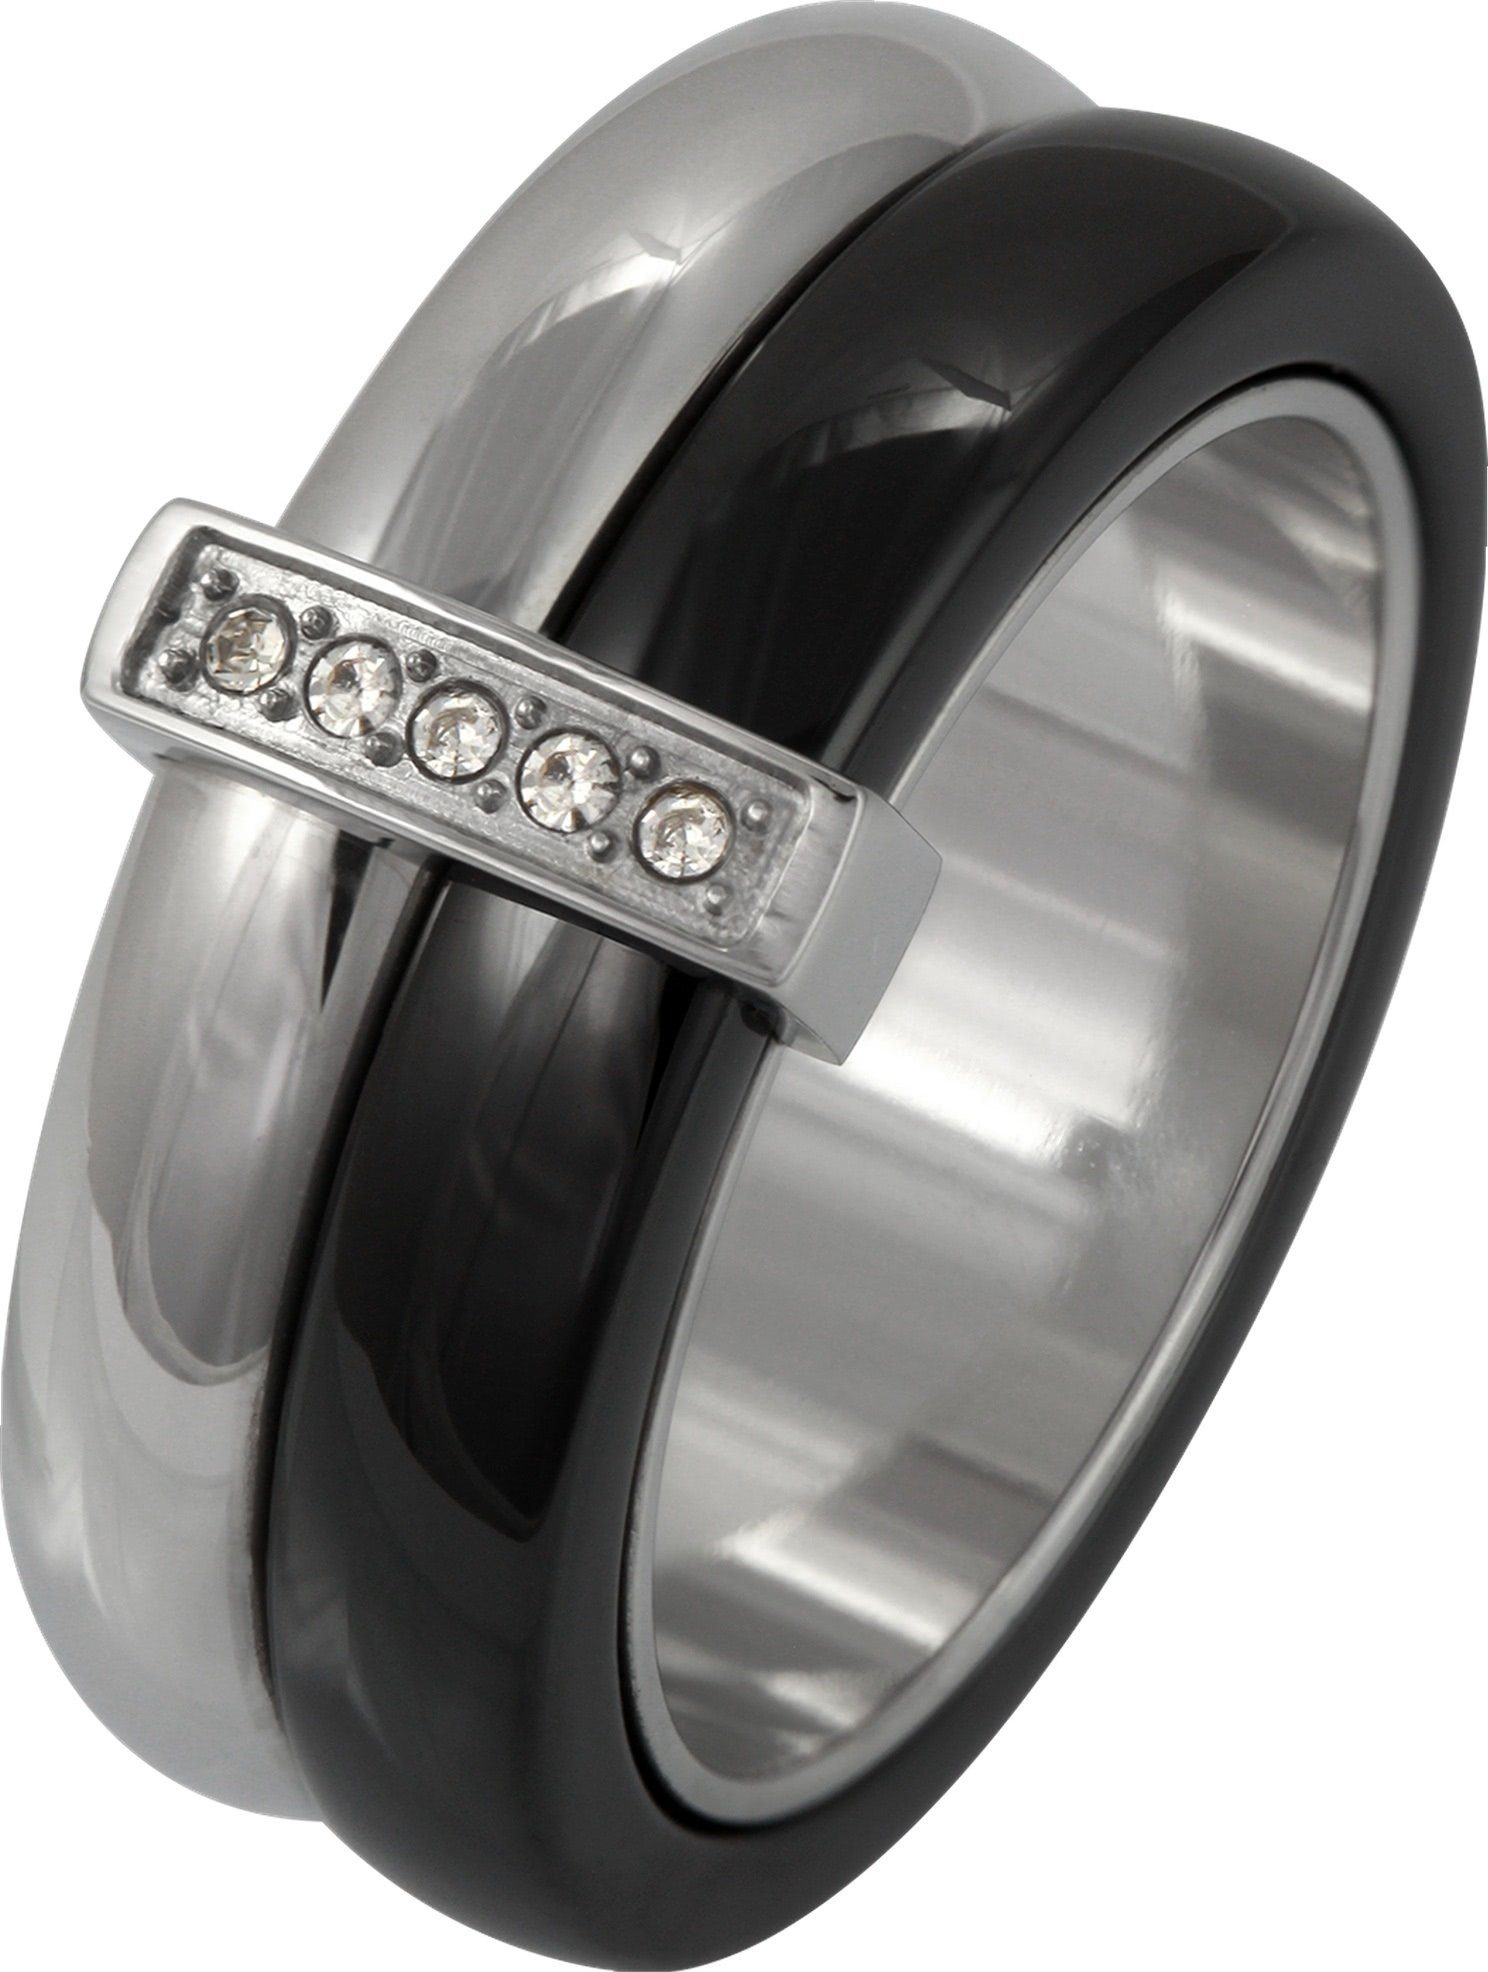 Amello Fingerring Amello Edelstahl Keramik Ring Größe 54 (Fingerring),  Ringe Edelstahl (Stainless Steel), Farbe: silber, schwarz, stahl